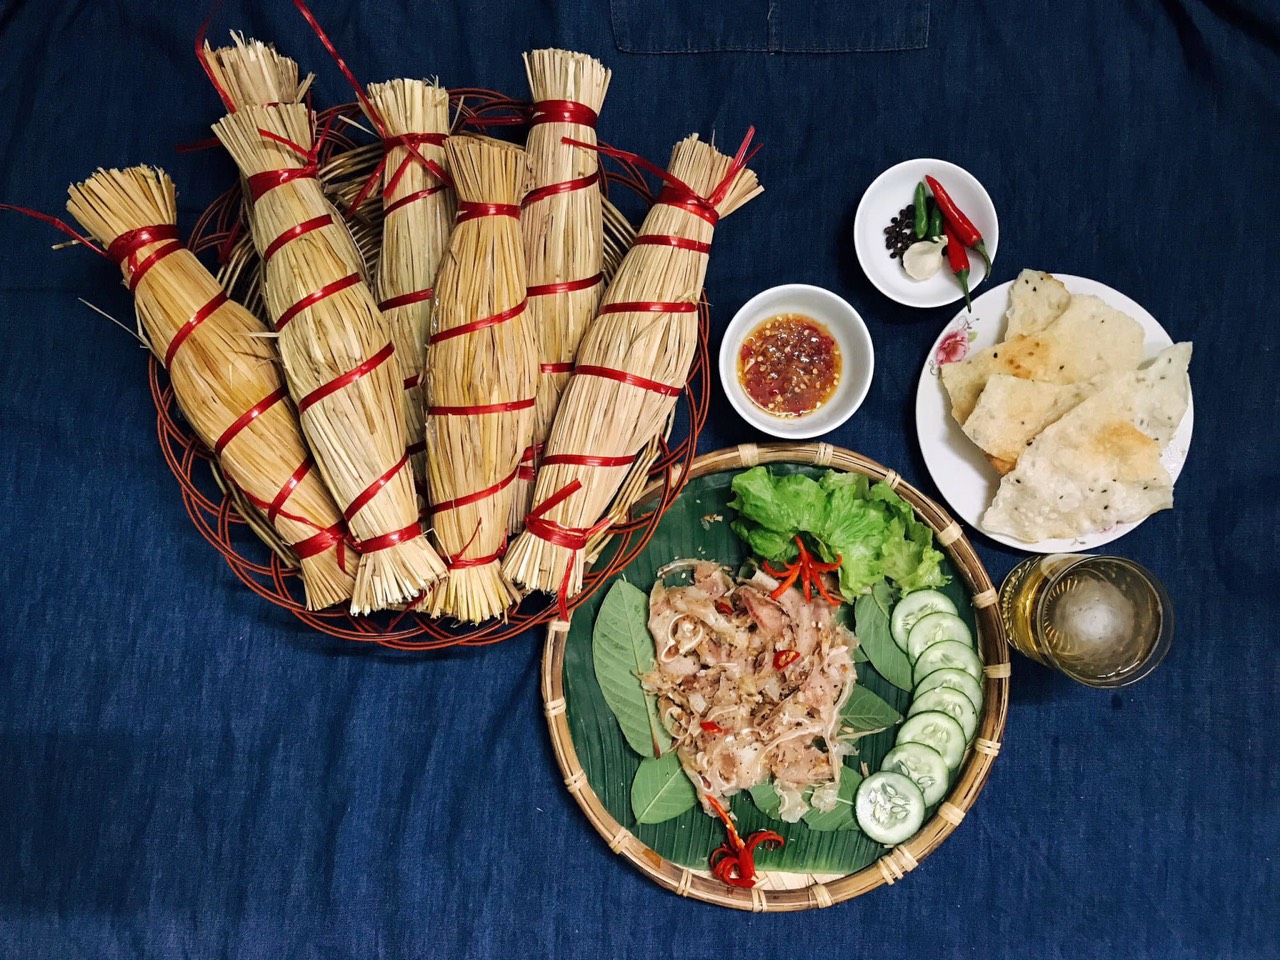 Tré là một trong những món ngon lâu đời góp phần làm phong phú nền ẩm thực Bình Định